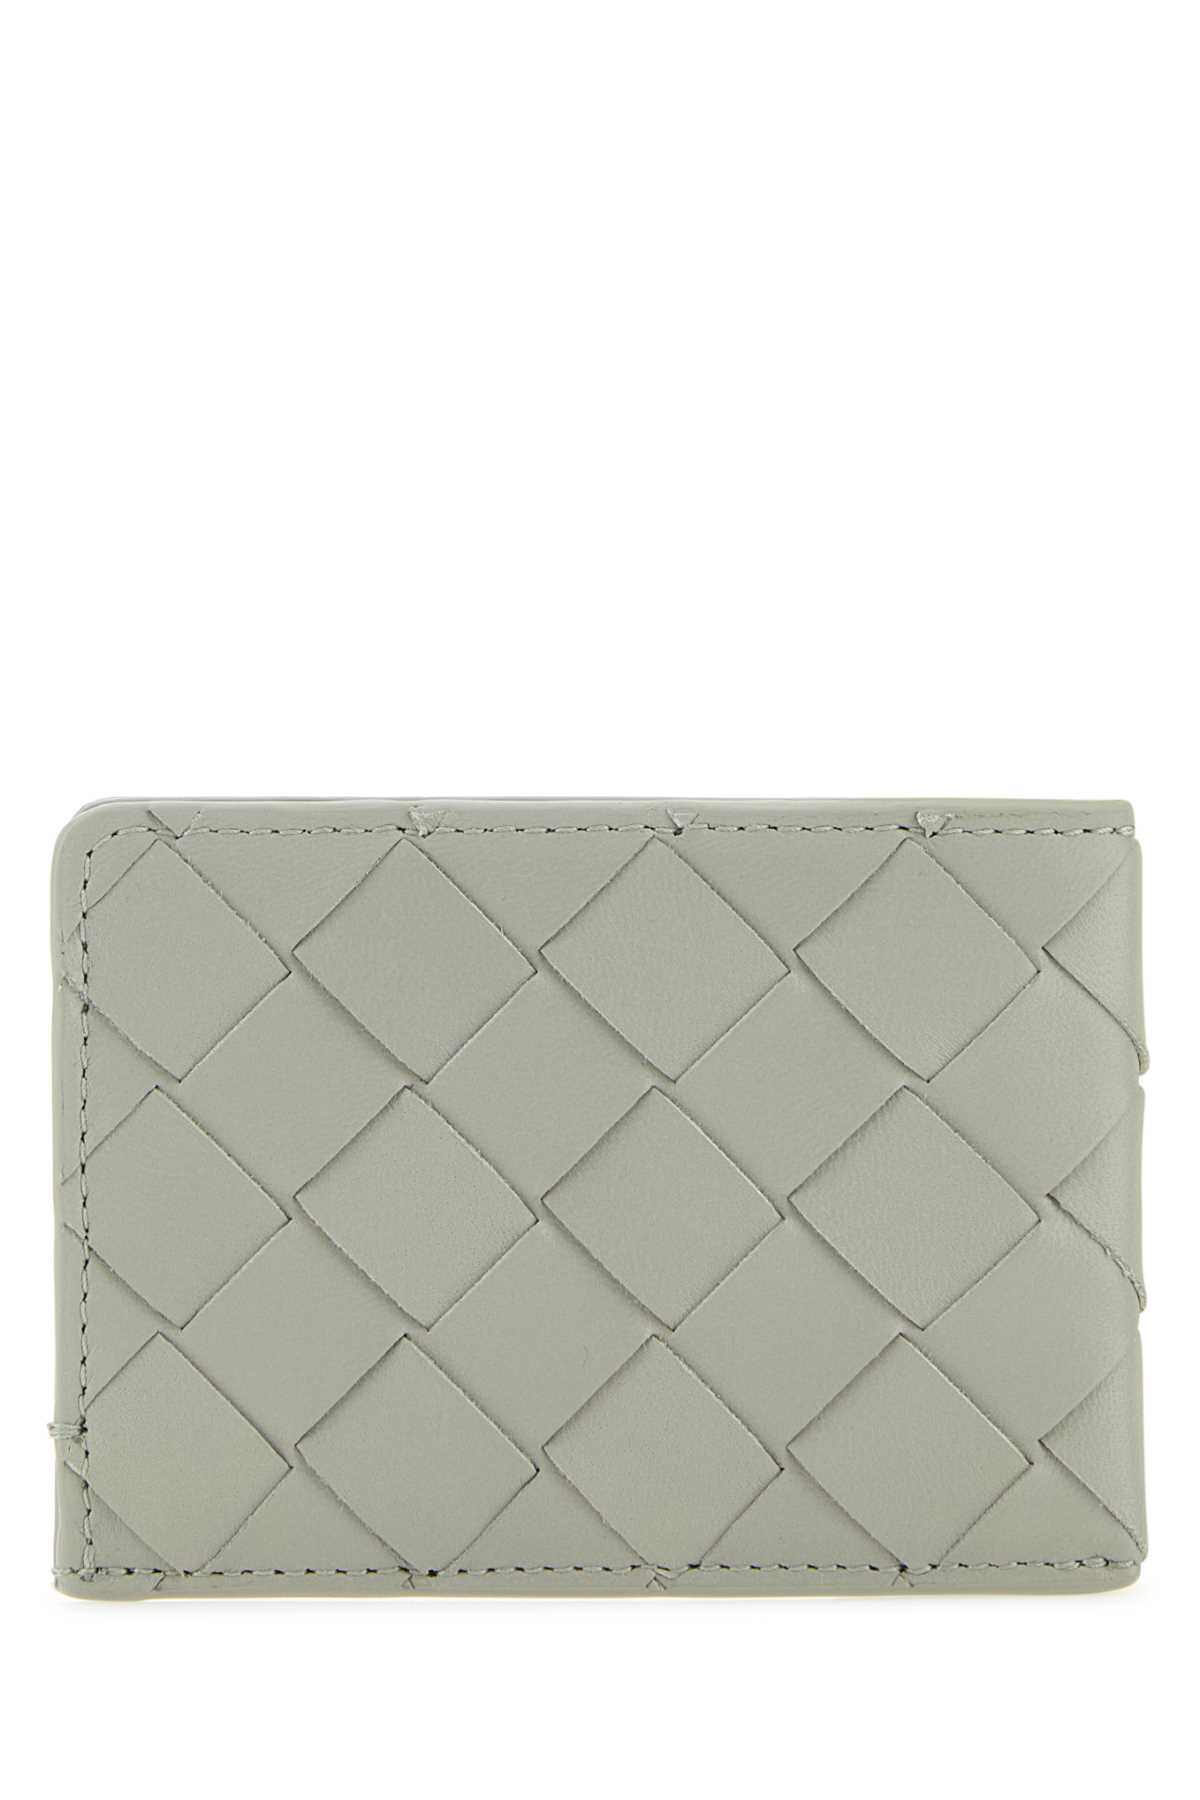 Bottega Veneta Light Grey Leather Card Holder